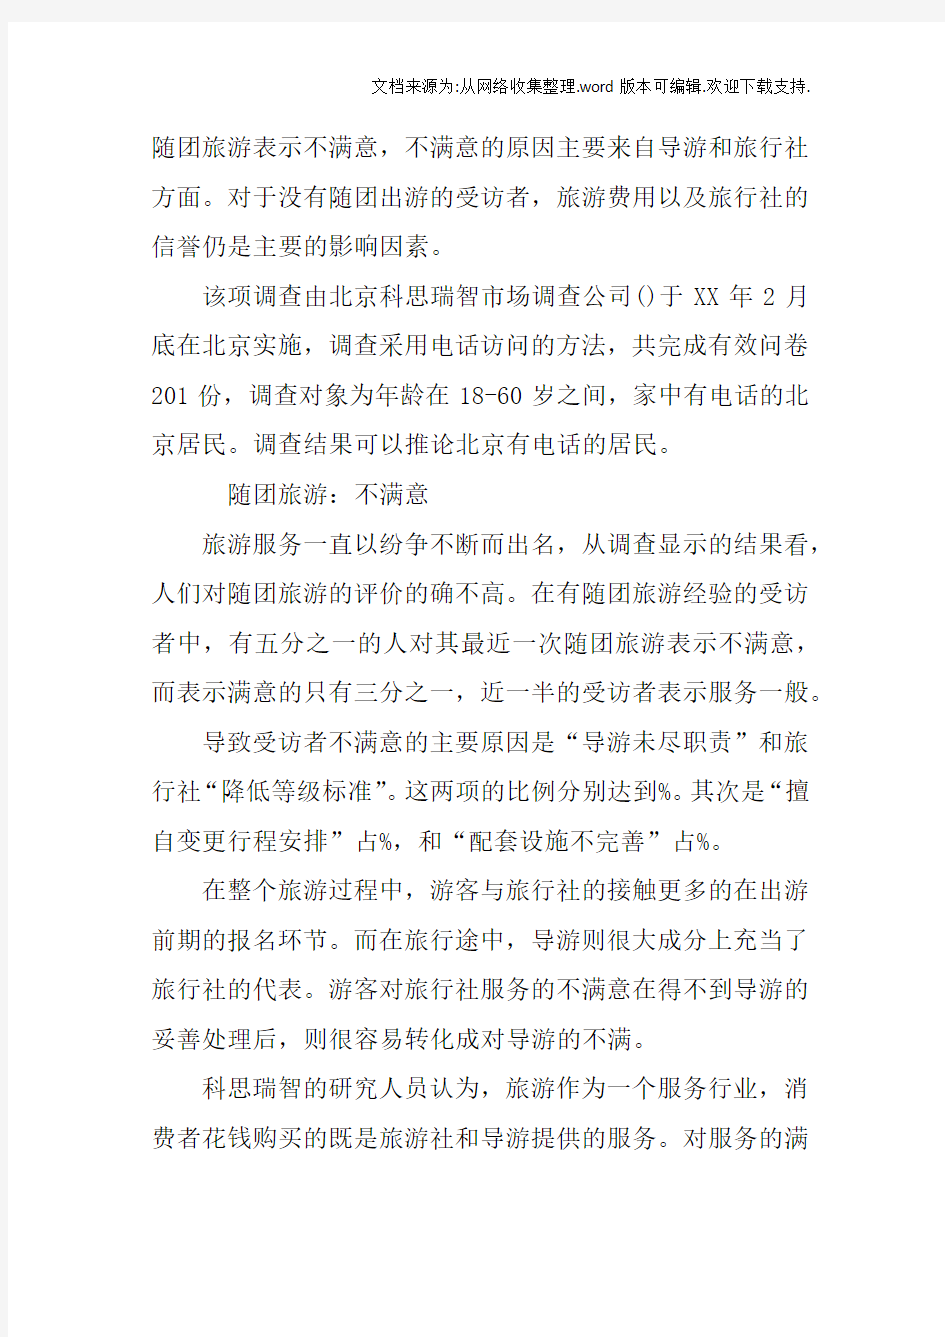 北京旅游市场社会实践调查报告